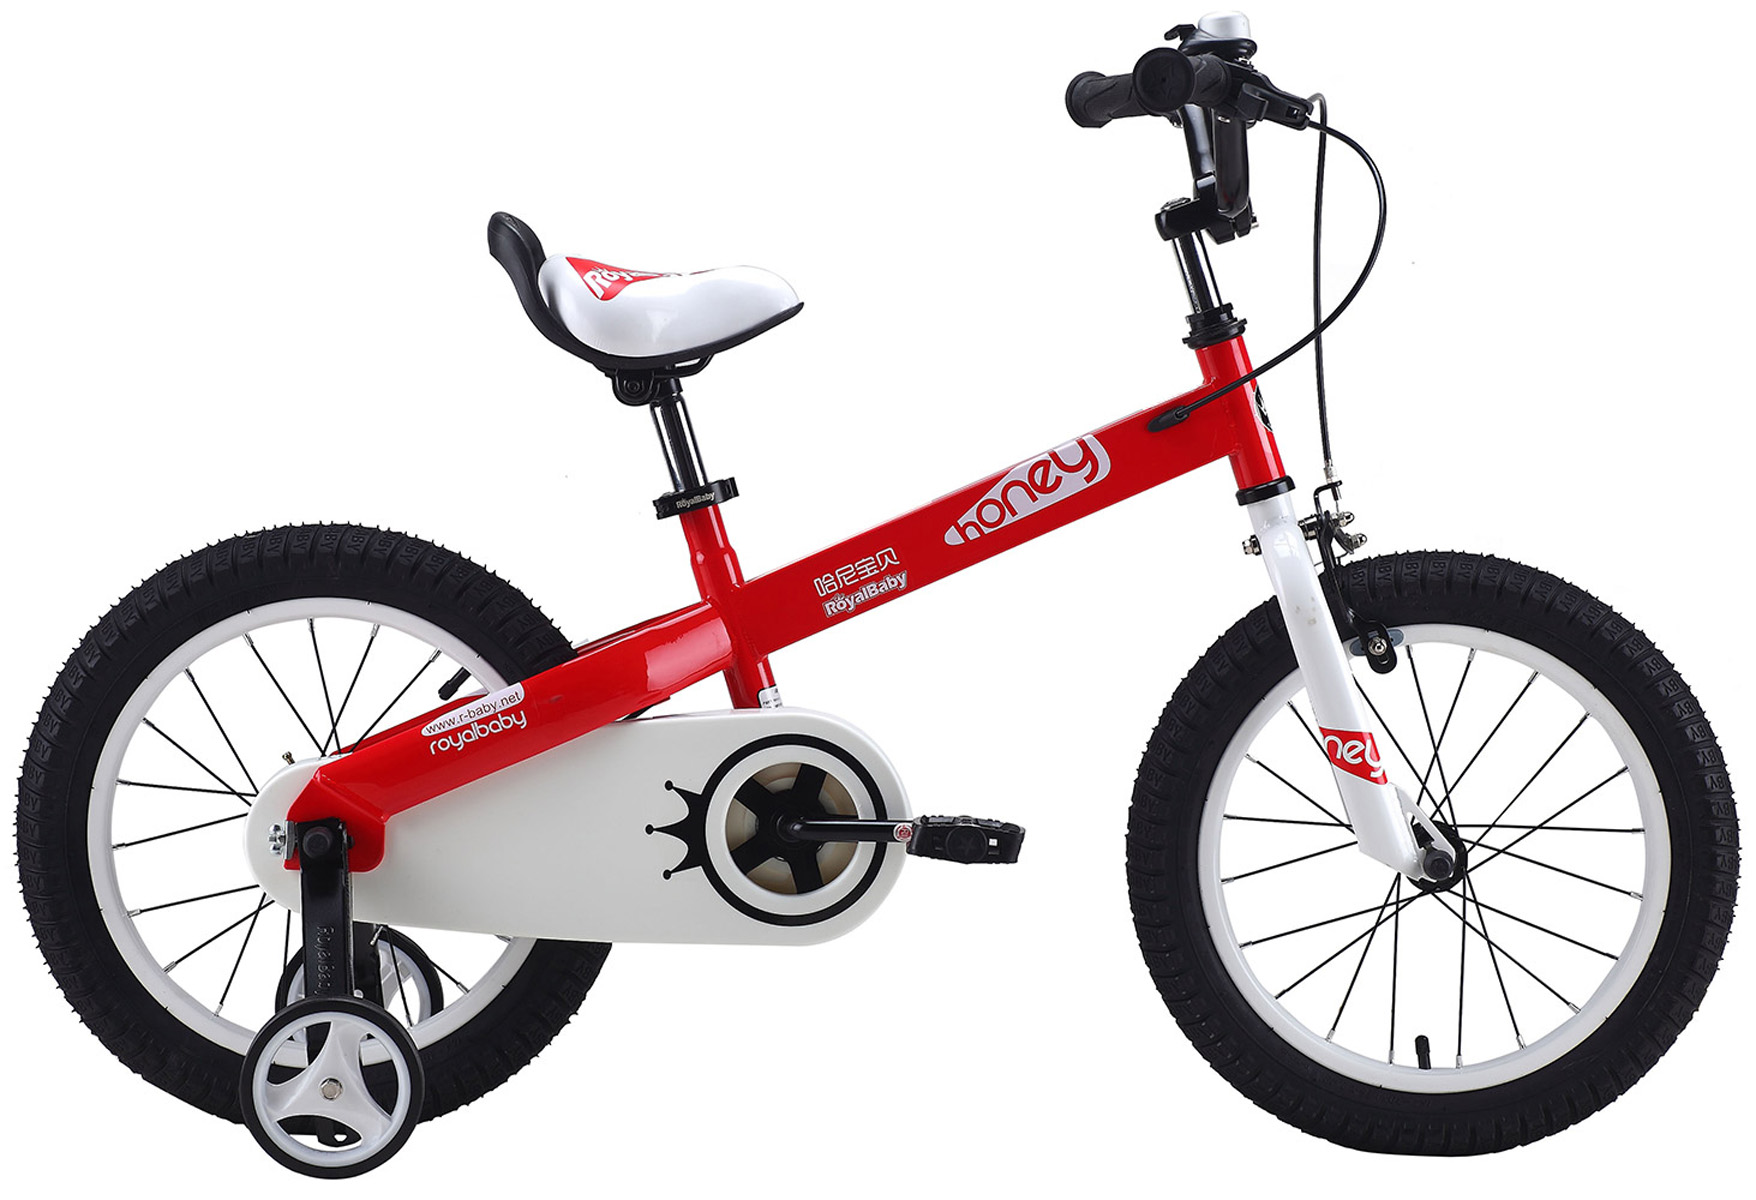  Отзывы о Детском велосипеде Royal Baby Honey Steel 16" (2020) 2020